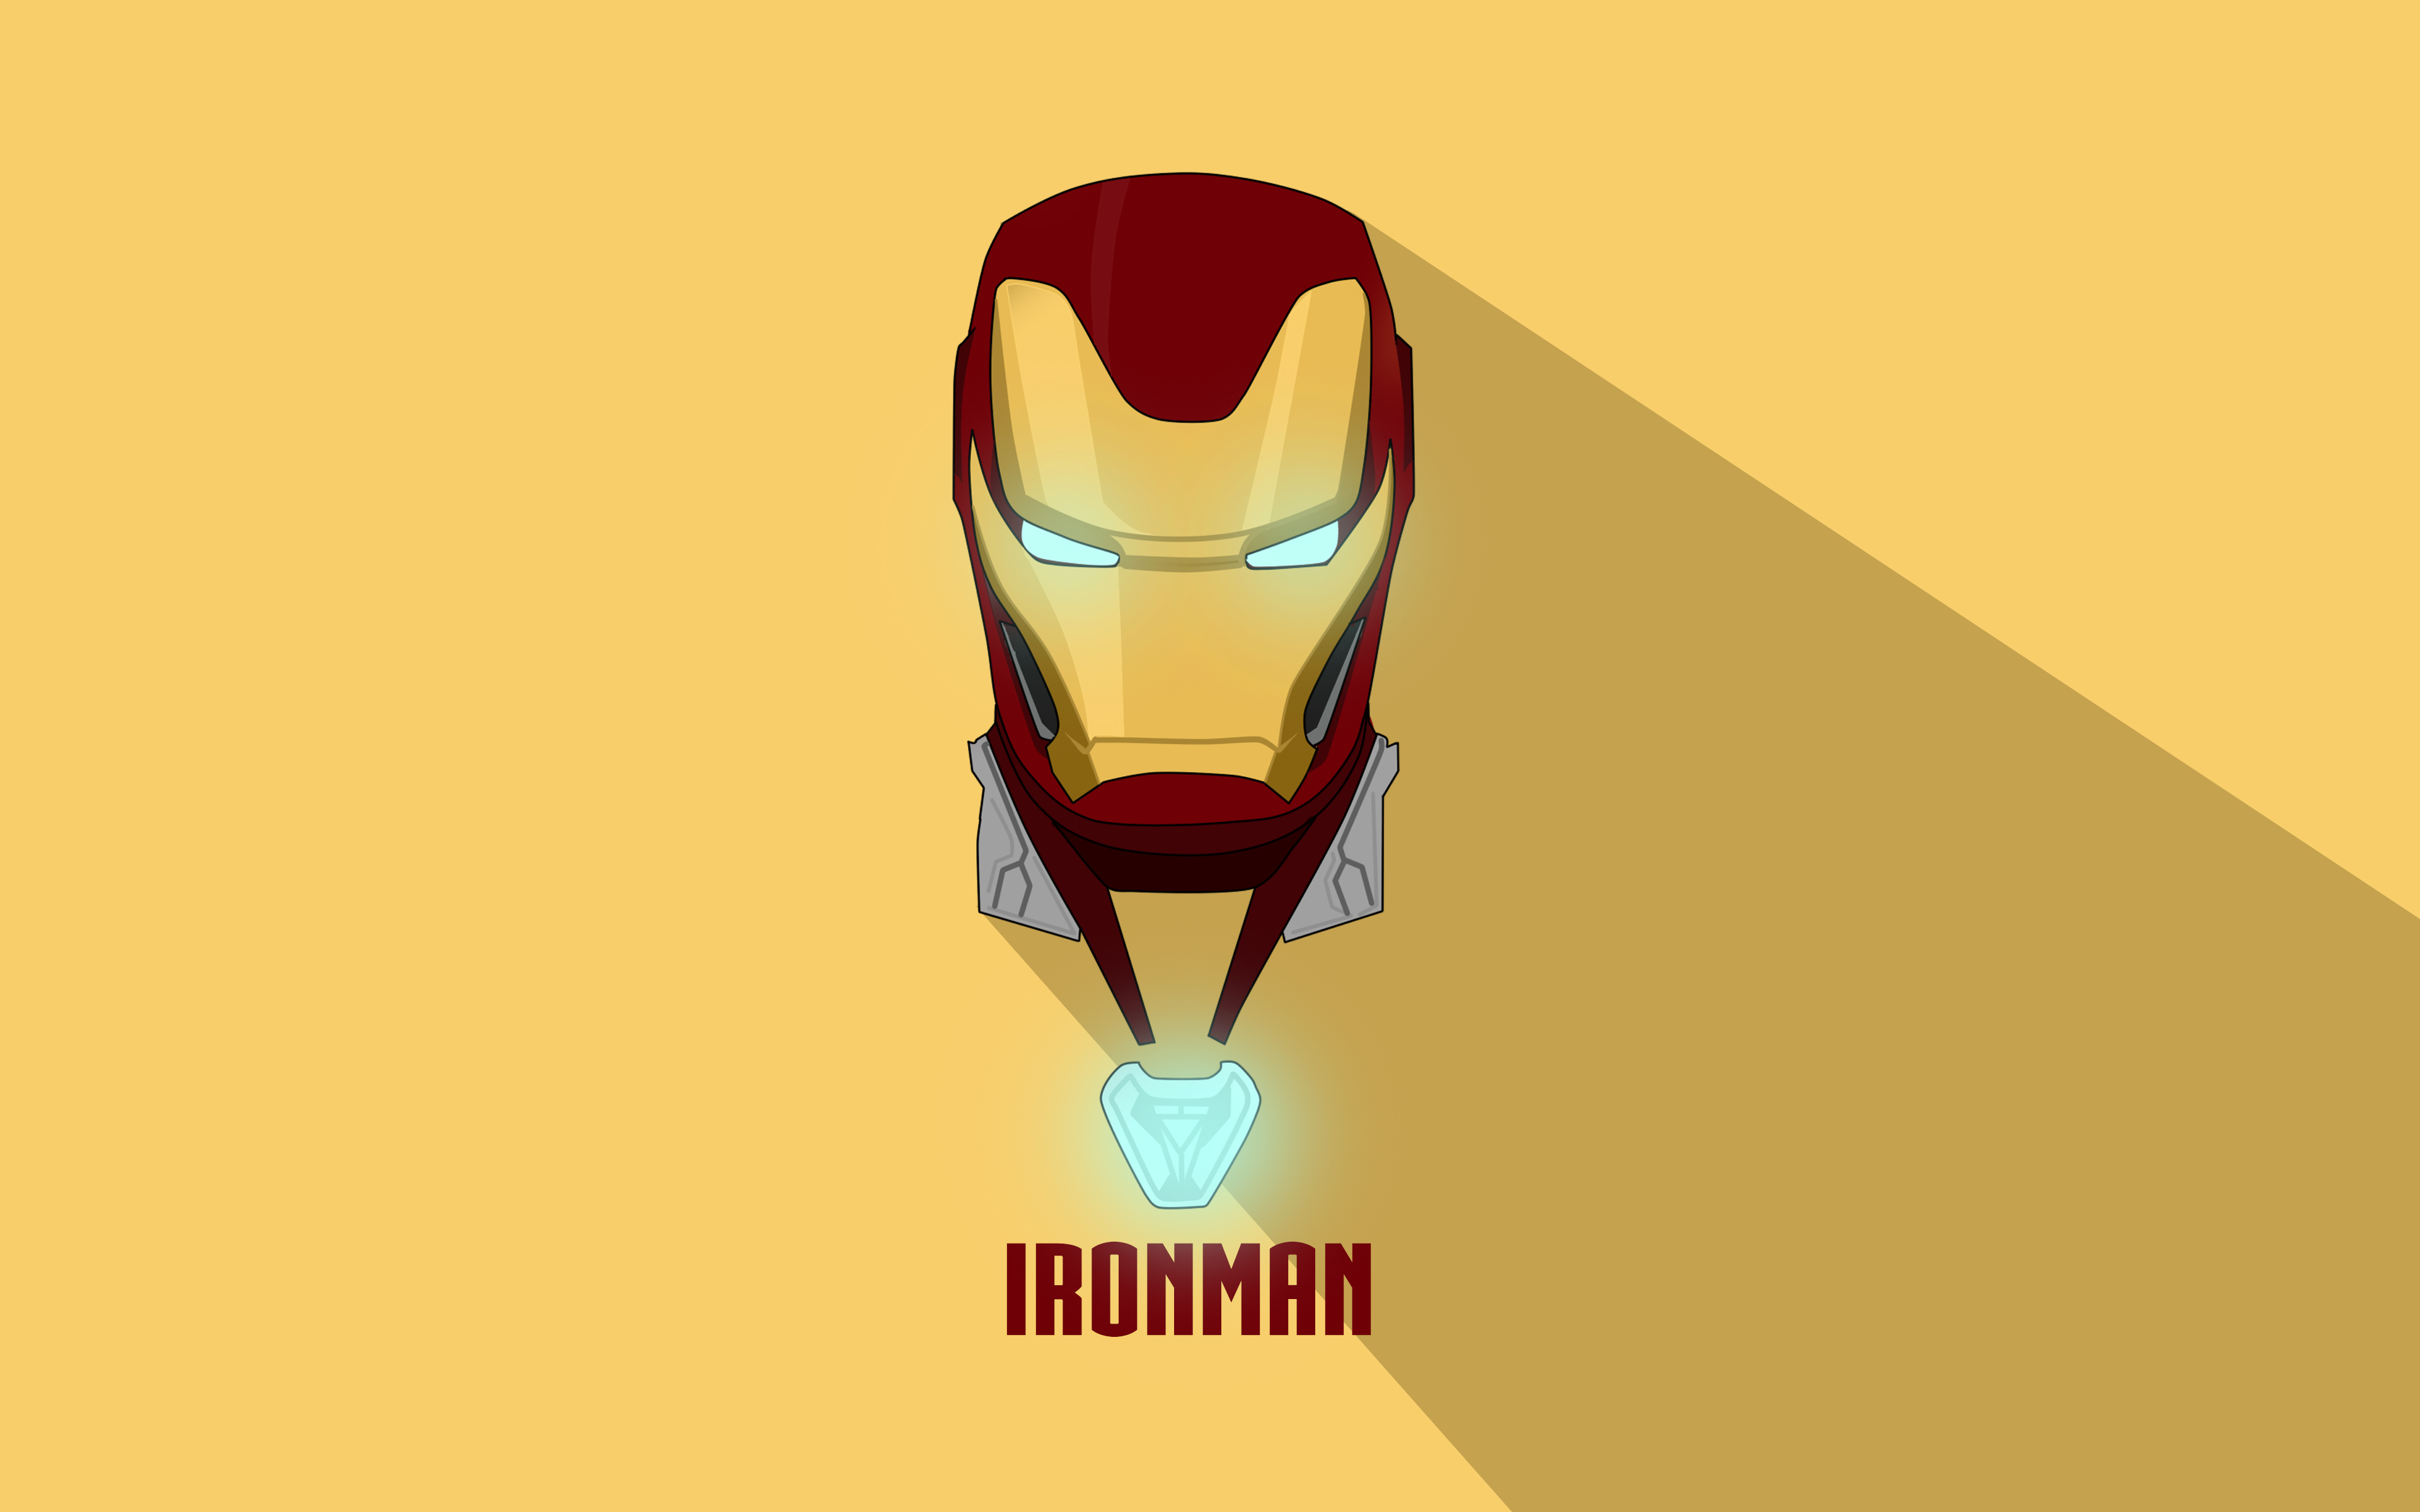 Iron Man Minimal Artwork 4k Wallpapers Iron Man Wallpaper 4k 3840x2400 Wallpaper Teahub Io